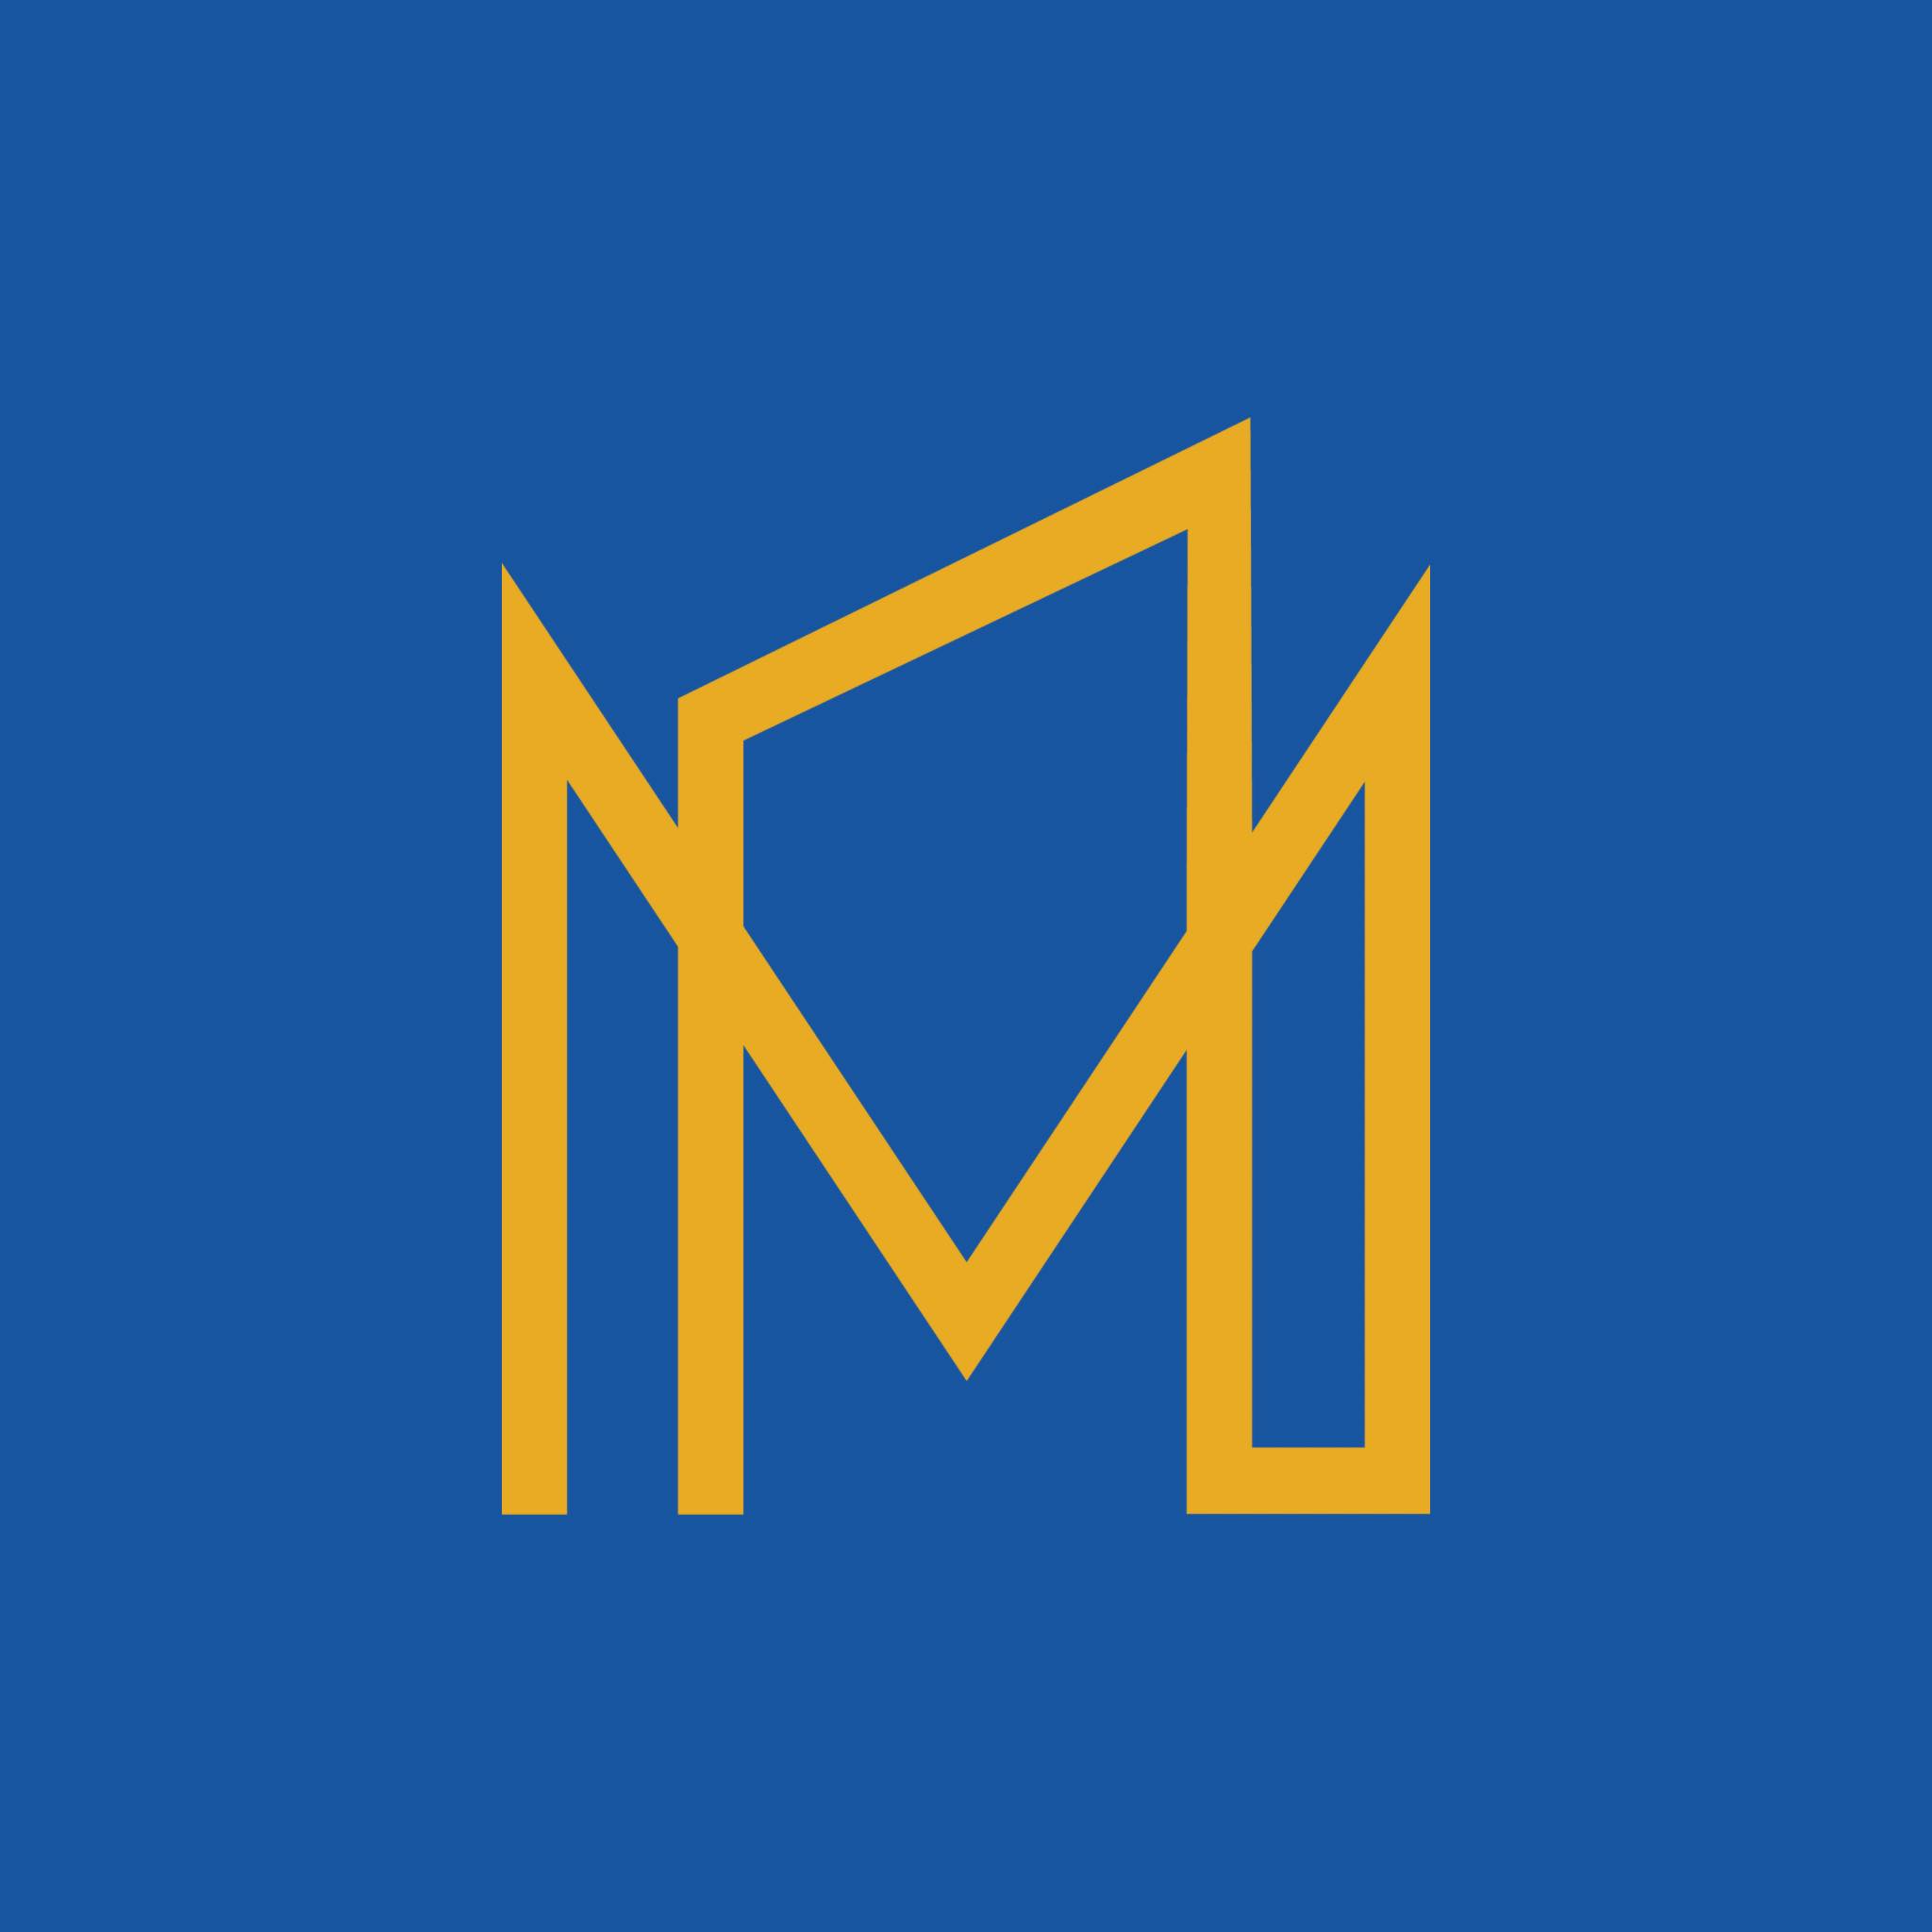 Construction MVMT - Entrepreneur général Jonquière